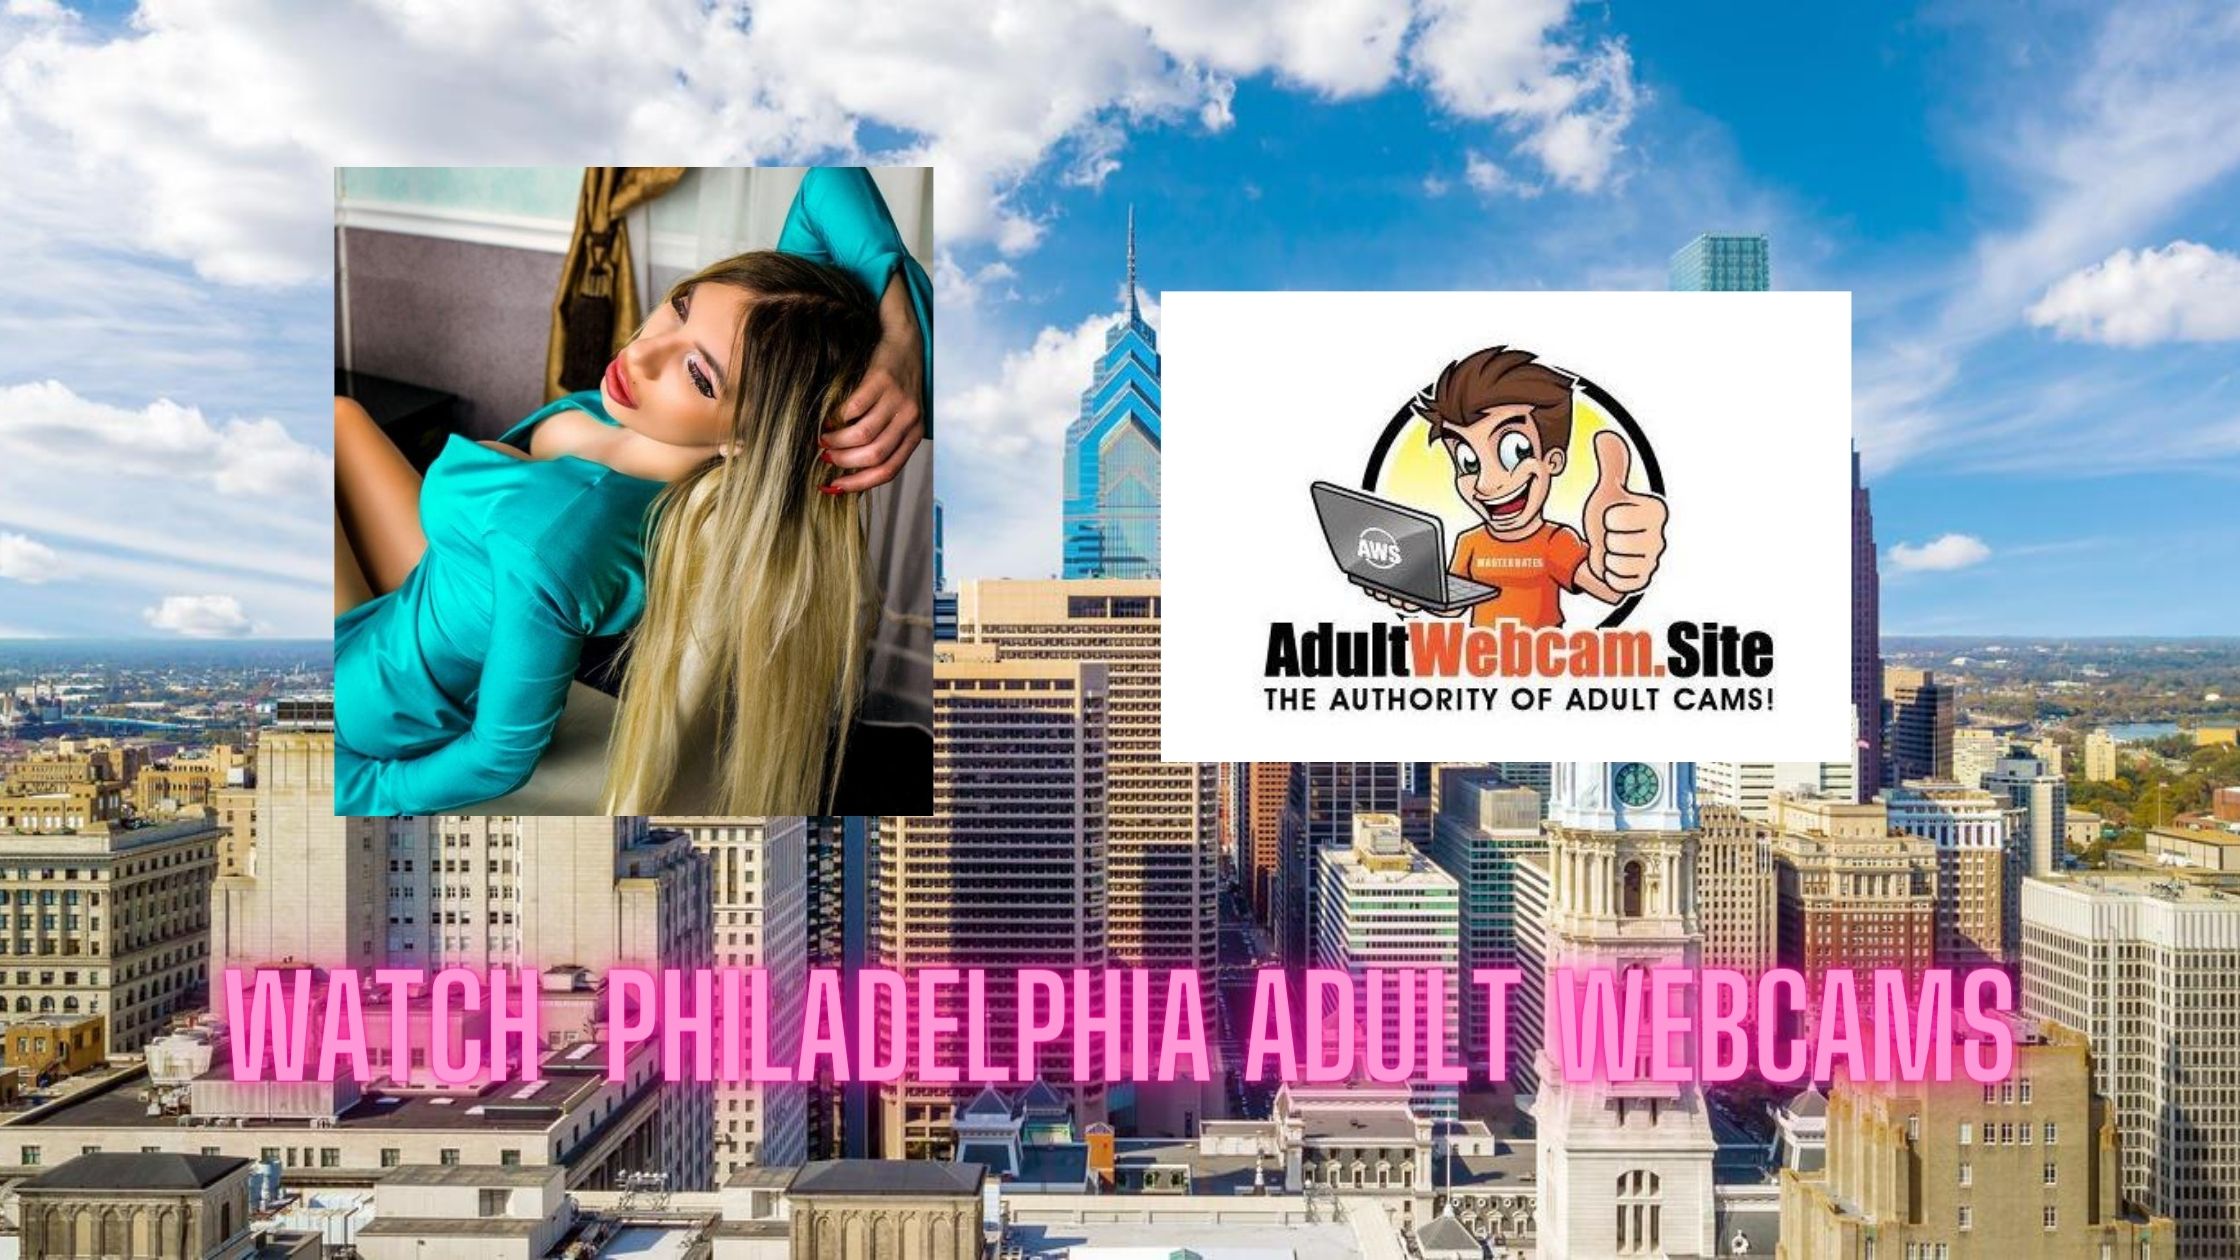 Web porn in Philadelphia on Philadelphia Porn